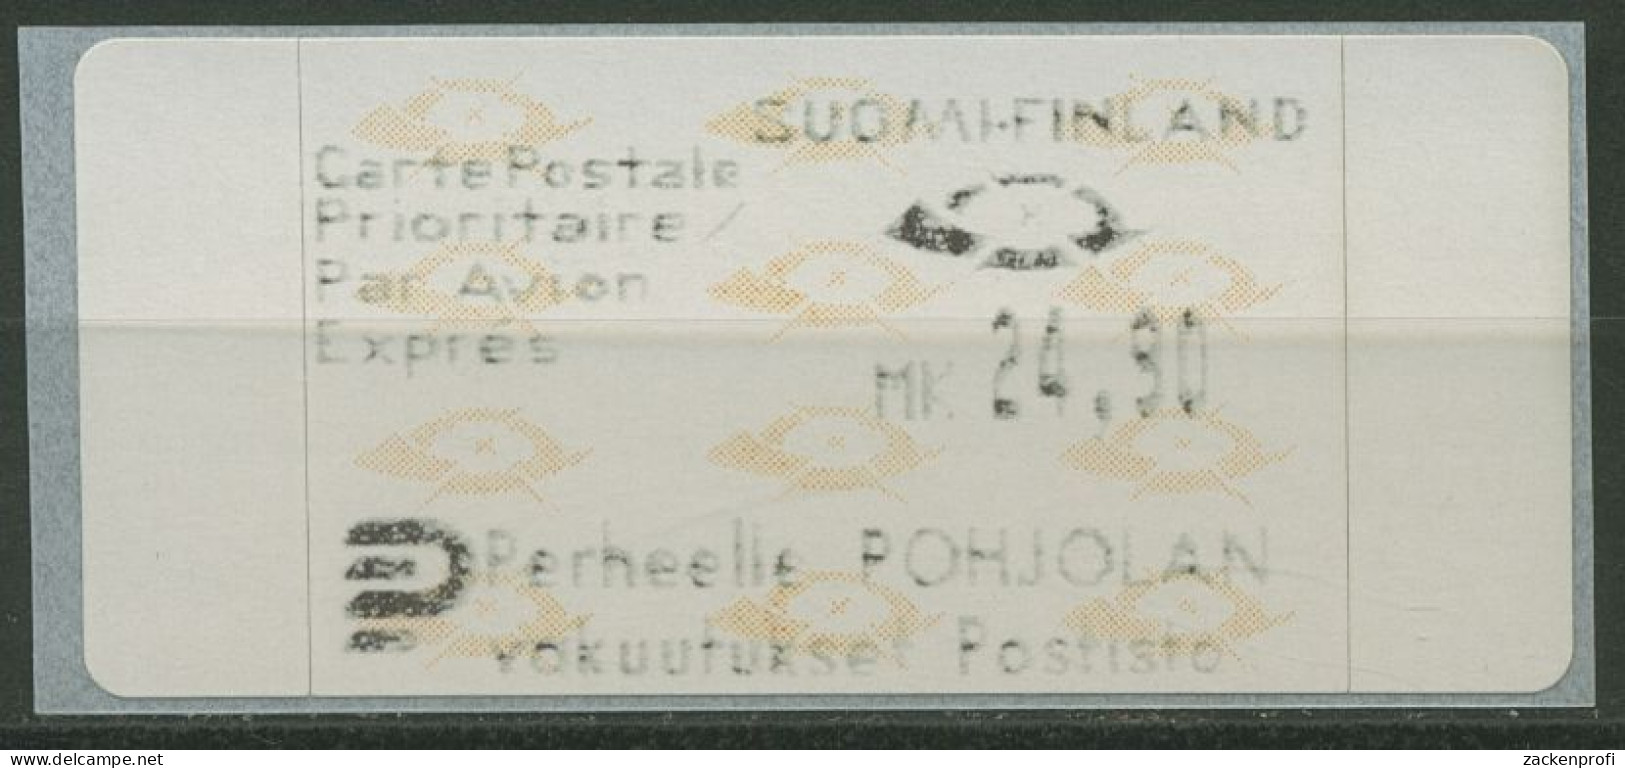 Finnland Automatenmarken 1992 Posthörner Einzelwert ATM 12.3 Z4 Postfrisch - Machine Labels [ATM]